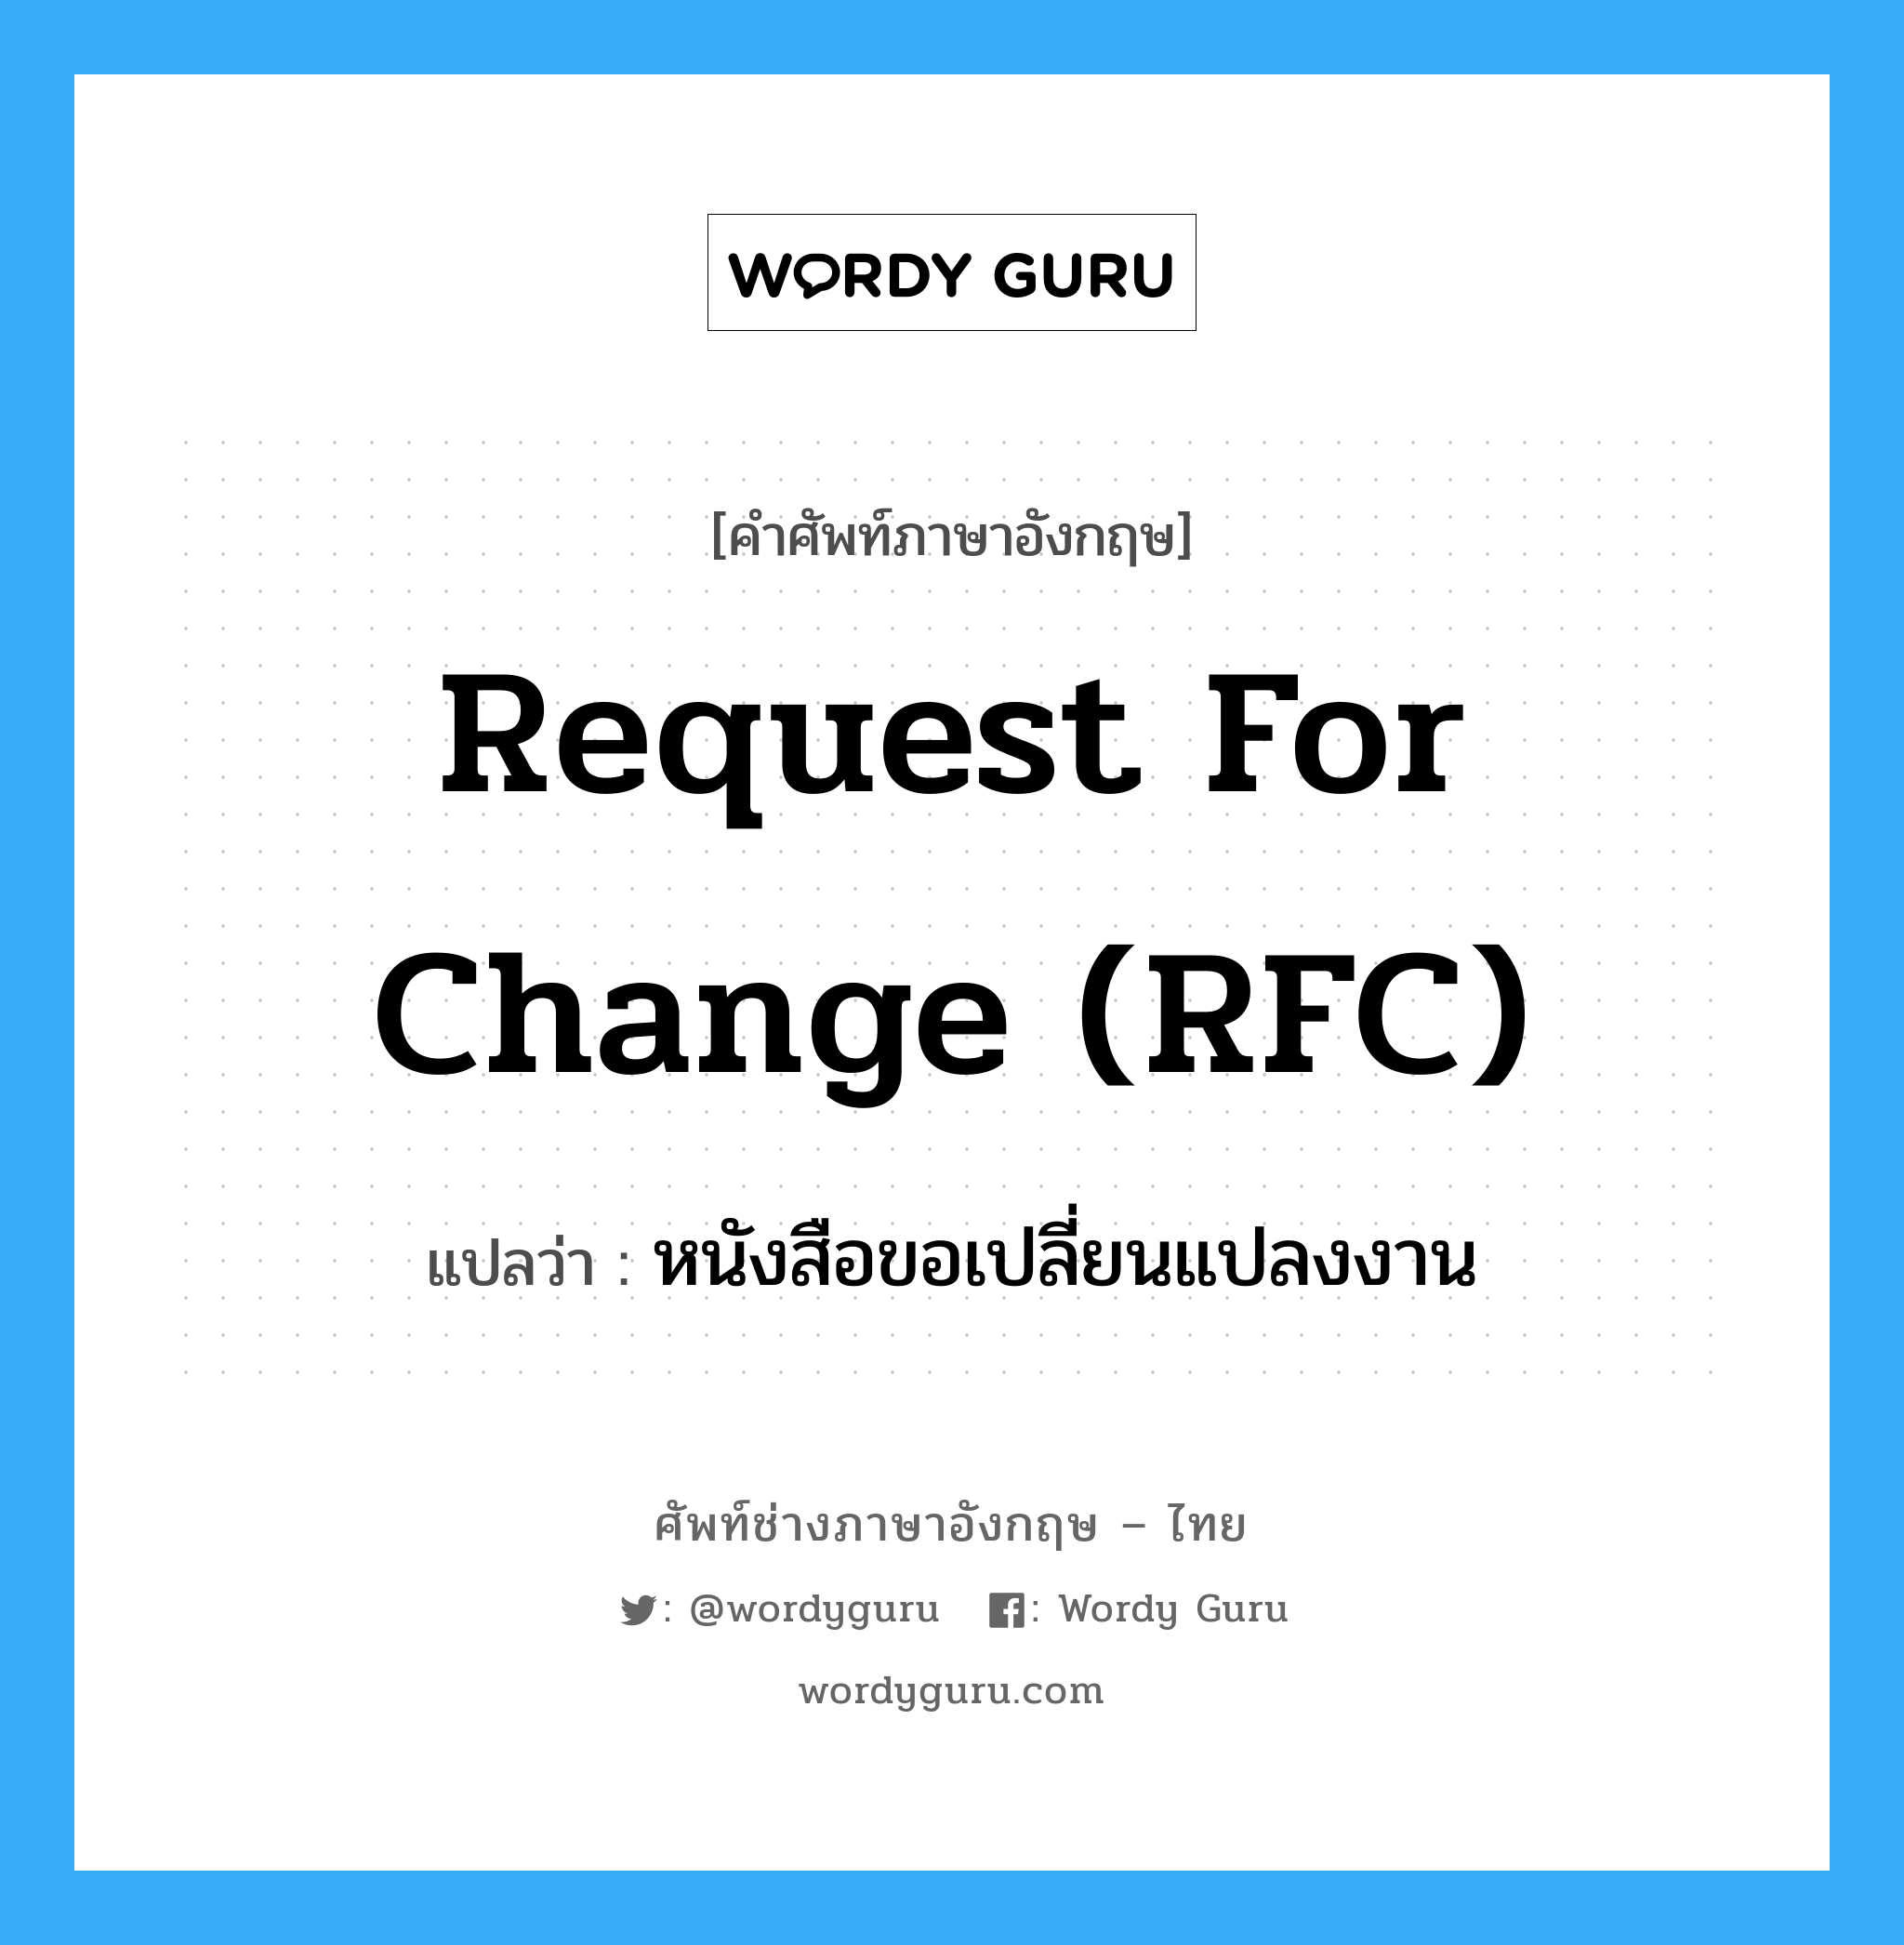 หนังสือขอเปลี่ยนแปลงงาน ภาษาอังกฤษ?, คำศัพท์ช่างภาษาอังกฤษ - ไทย หนังสือขอเปลี่ยนแปลงงาน คำศัพท์ภาษาอังกฤษ หนังสือขอเปลี่ยนแปลงงาน แปลว่า Request for Change (RFC)